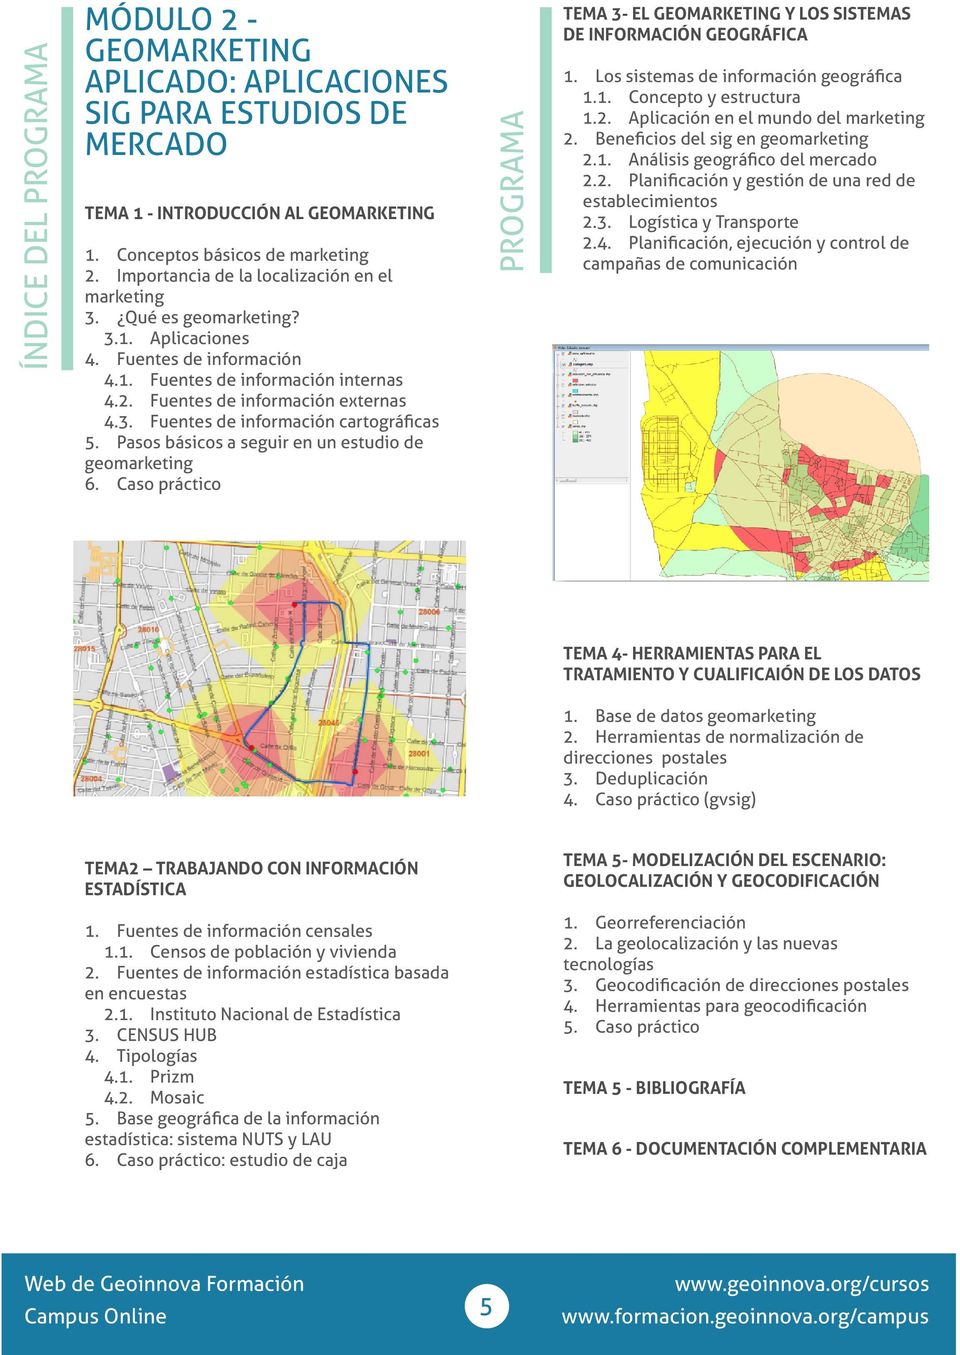 Pasos básicos a seguir en un estudio de geomarketing 6. Caso práctico PROGRAMA TEMA 3- EL GEOMARKETING Y LOS SISTEMAS DE INFORMACIÓN GEOGRÁFICA 1. Los sistemas de información geográfica 1.1. Concepto y estructura 1.